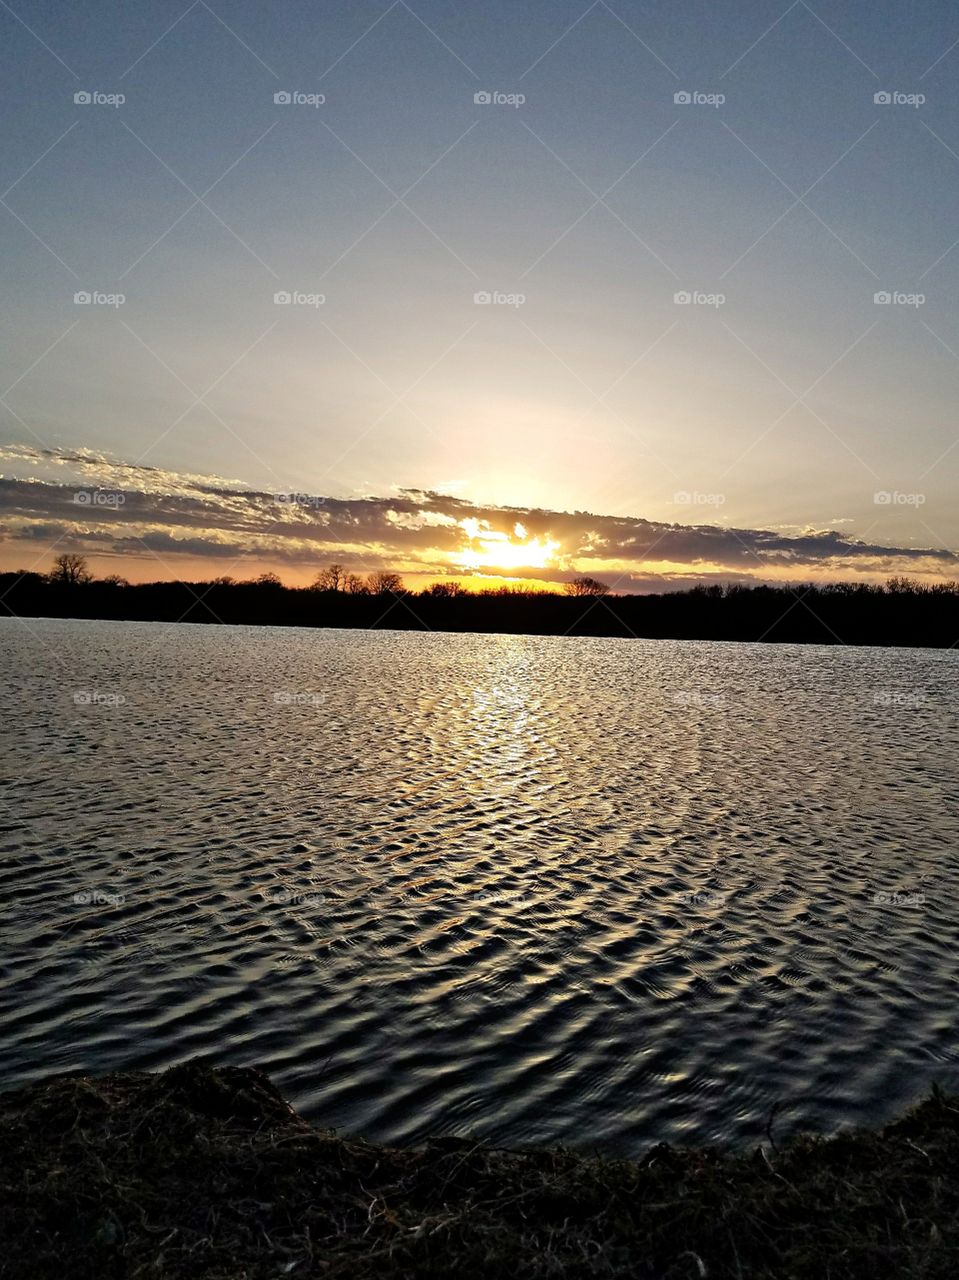 sun set on the water